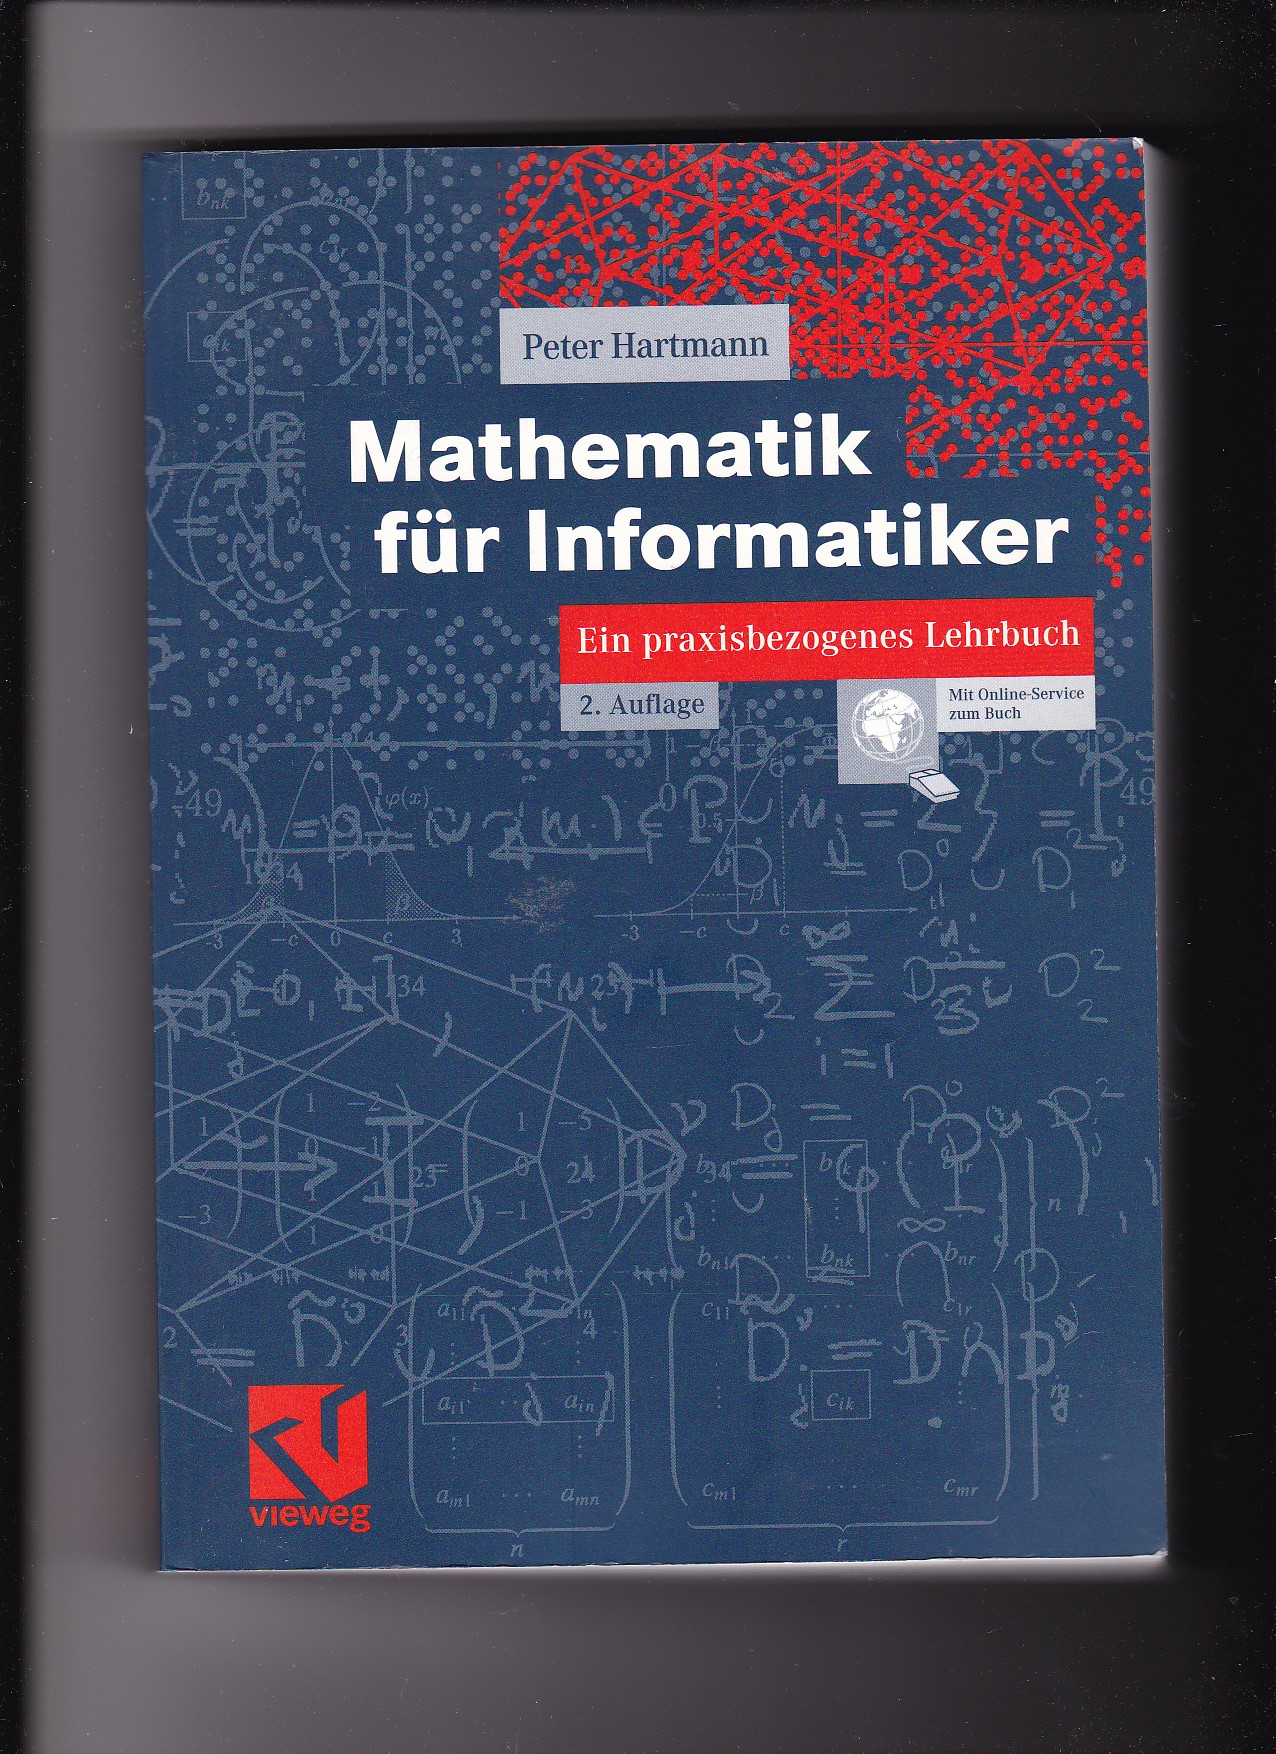 Peter Hartmann, Mathematik für Informatiker - Ein praxisbezogenes Lehrbuch  2. Auflage - Hartmann, Peter (Verfasser)